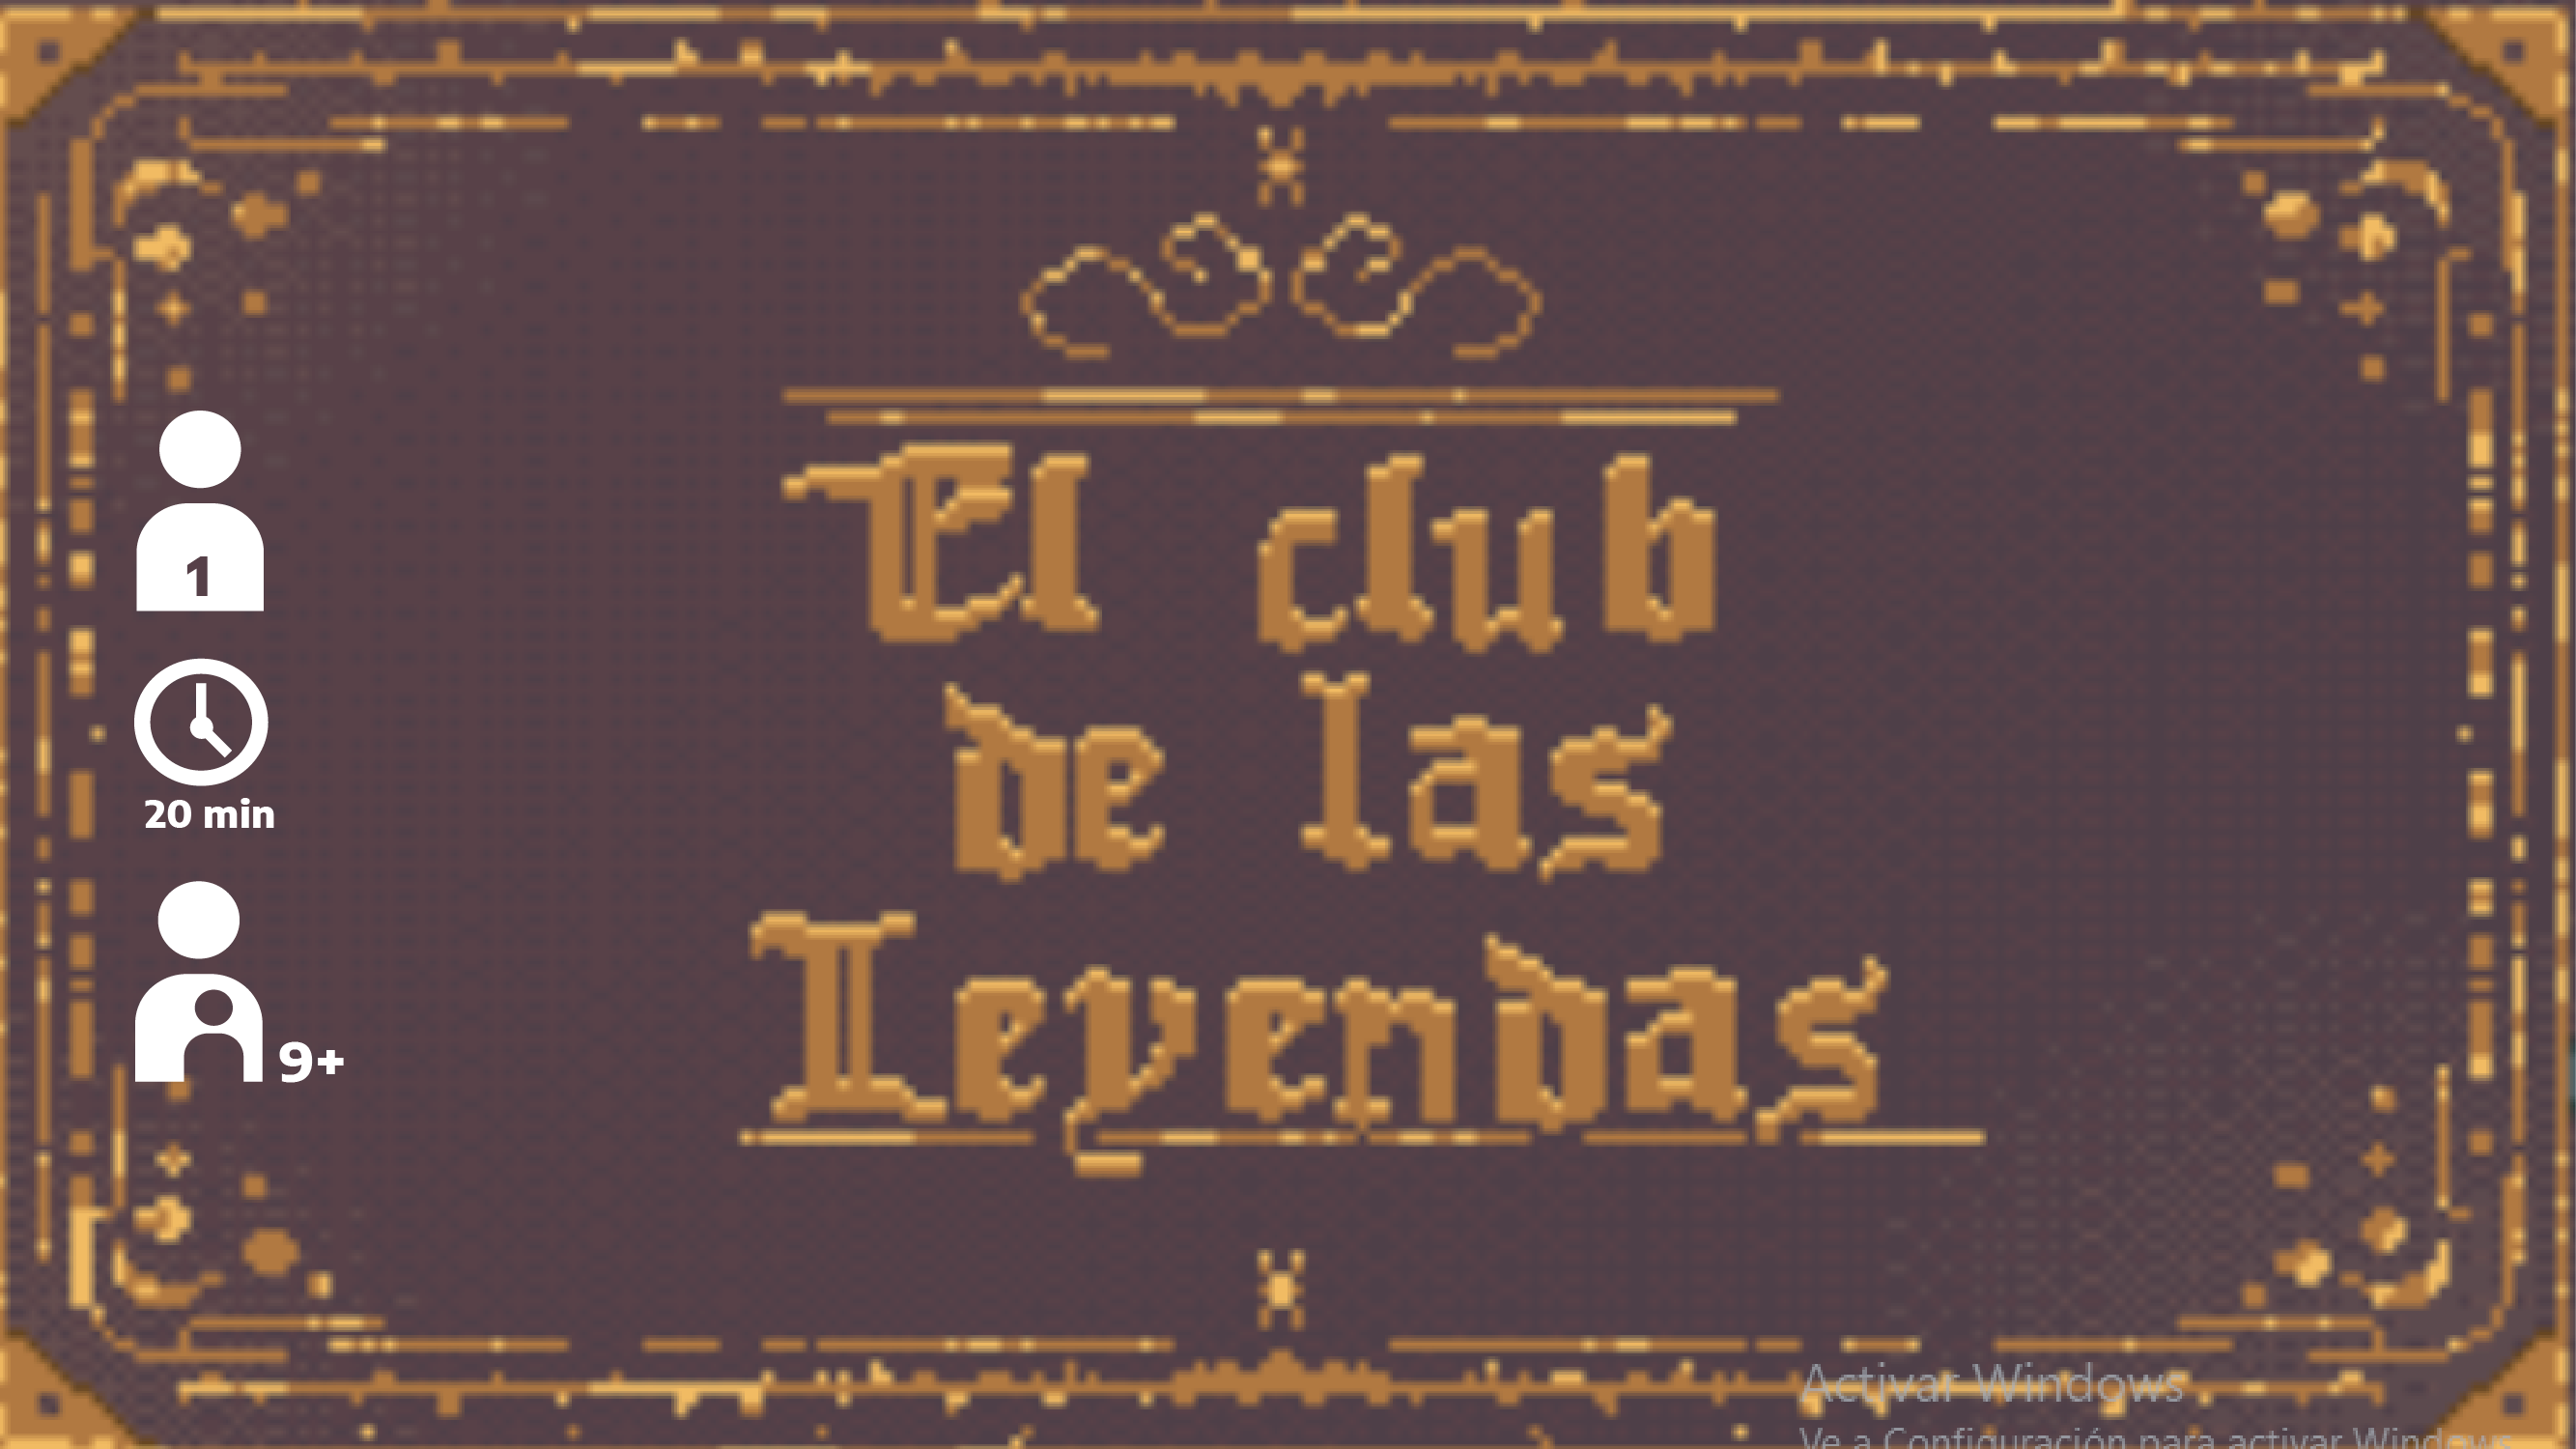 El Club de las Leyendas